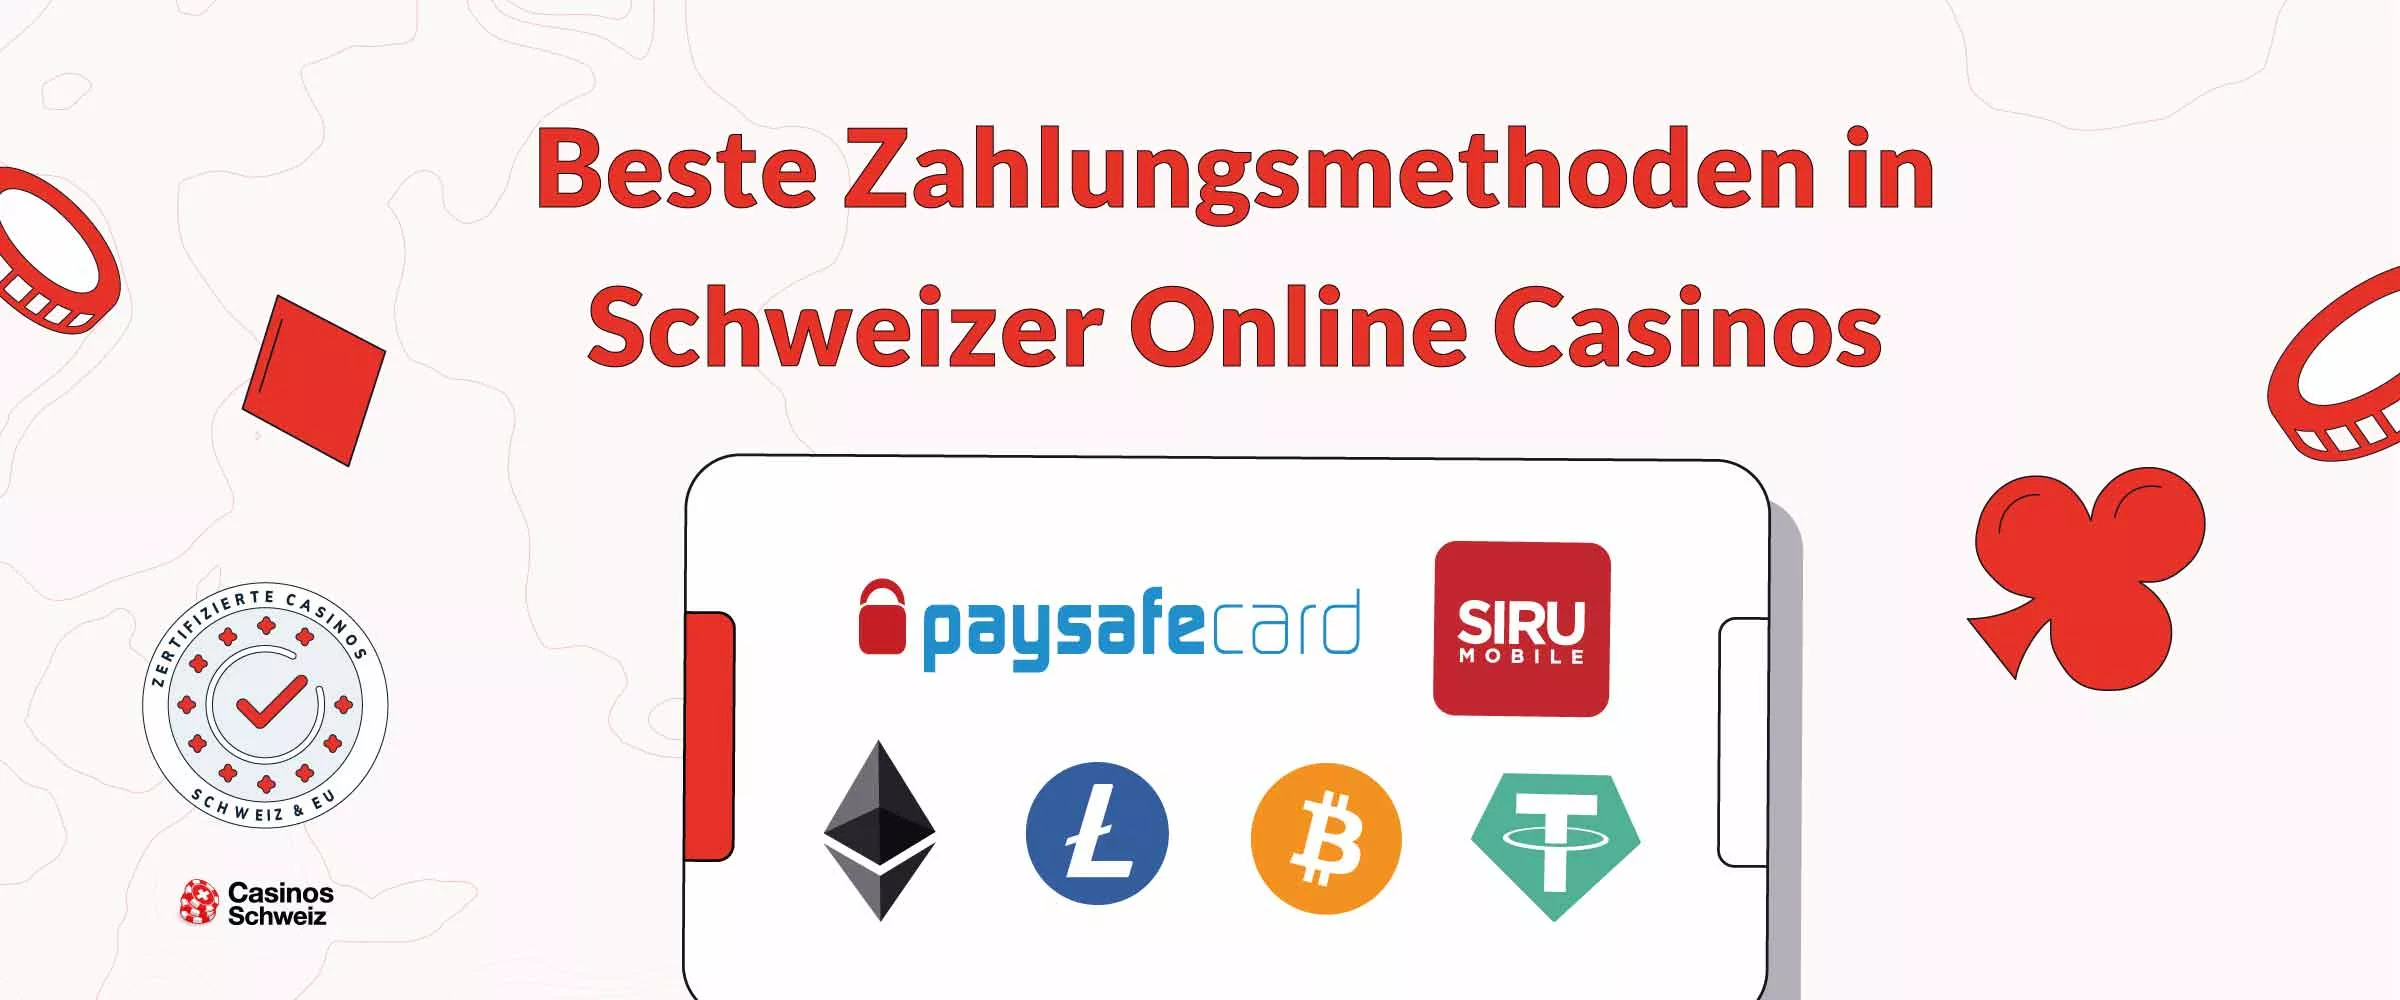 Beste Zahlungsmethoden in Schweizer Online Casinos